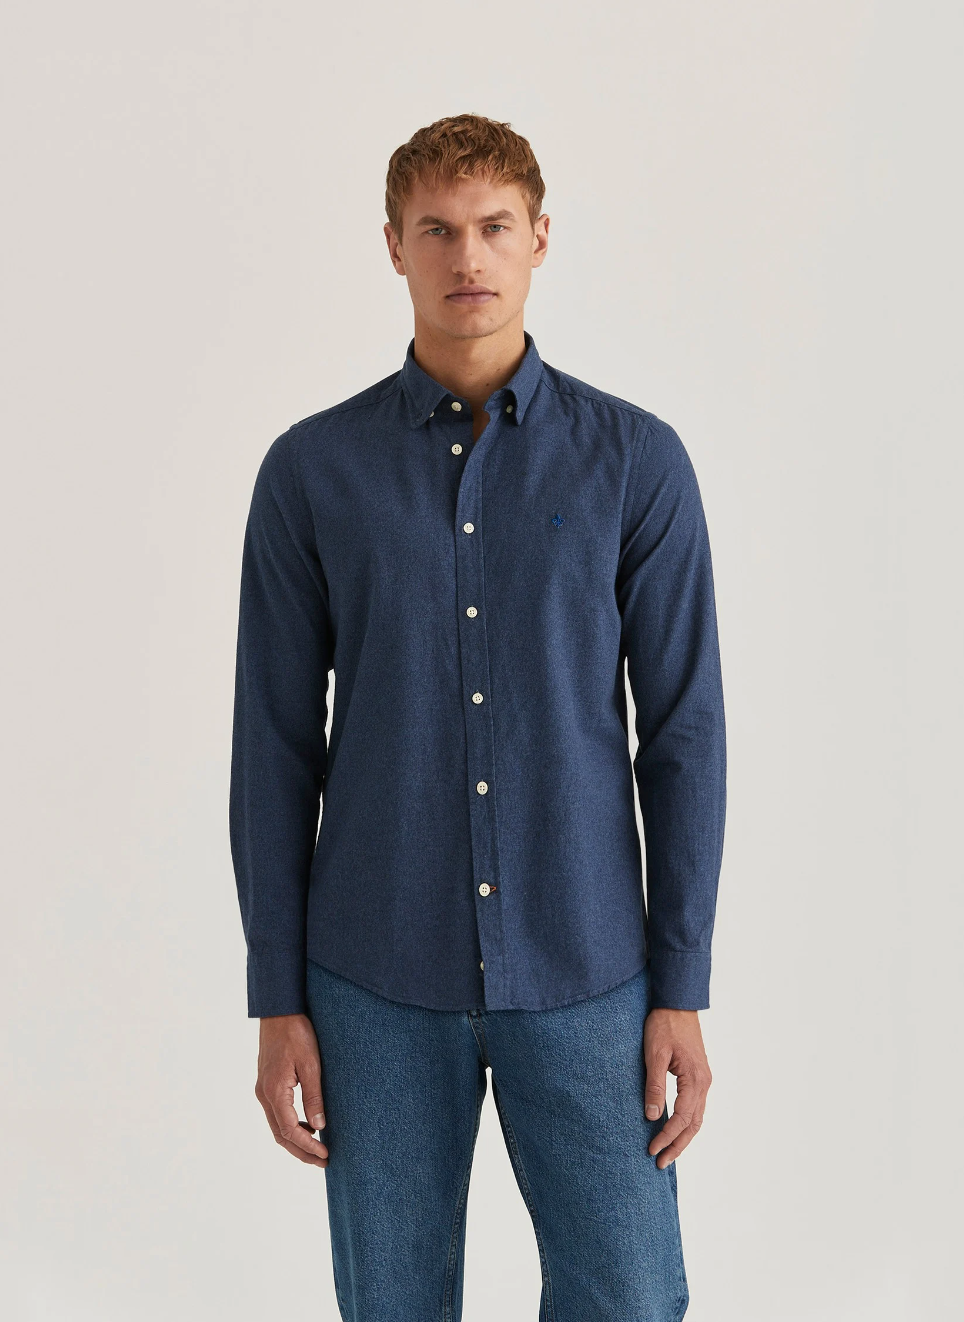 Watts Flannel Shirt Slim Fit Blue